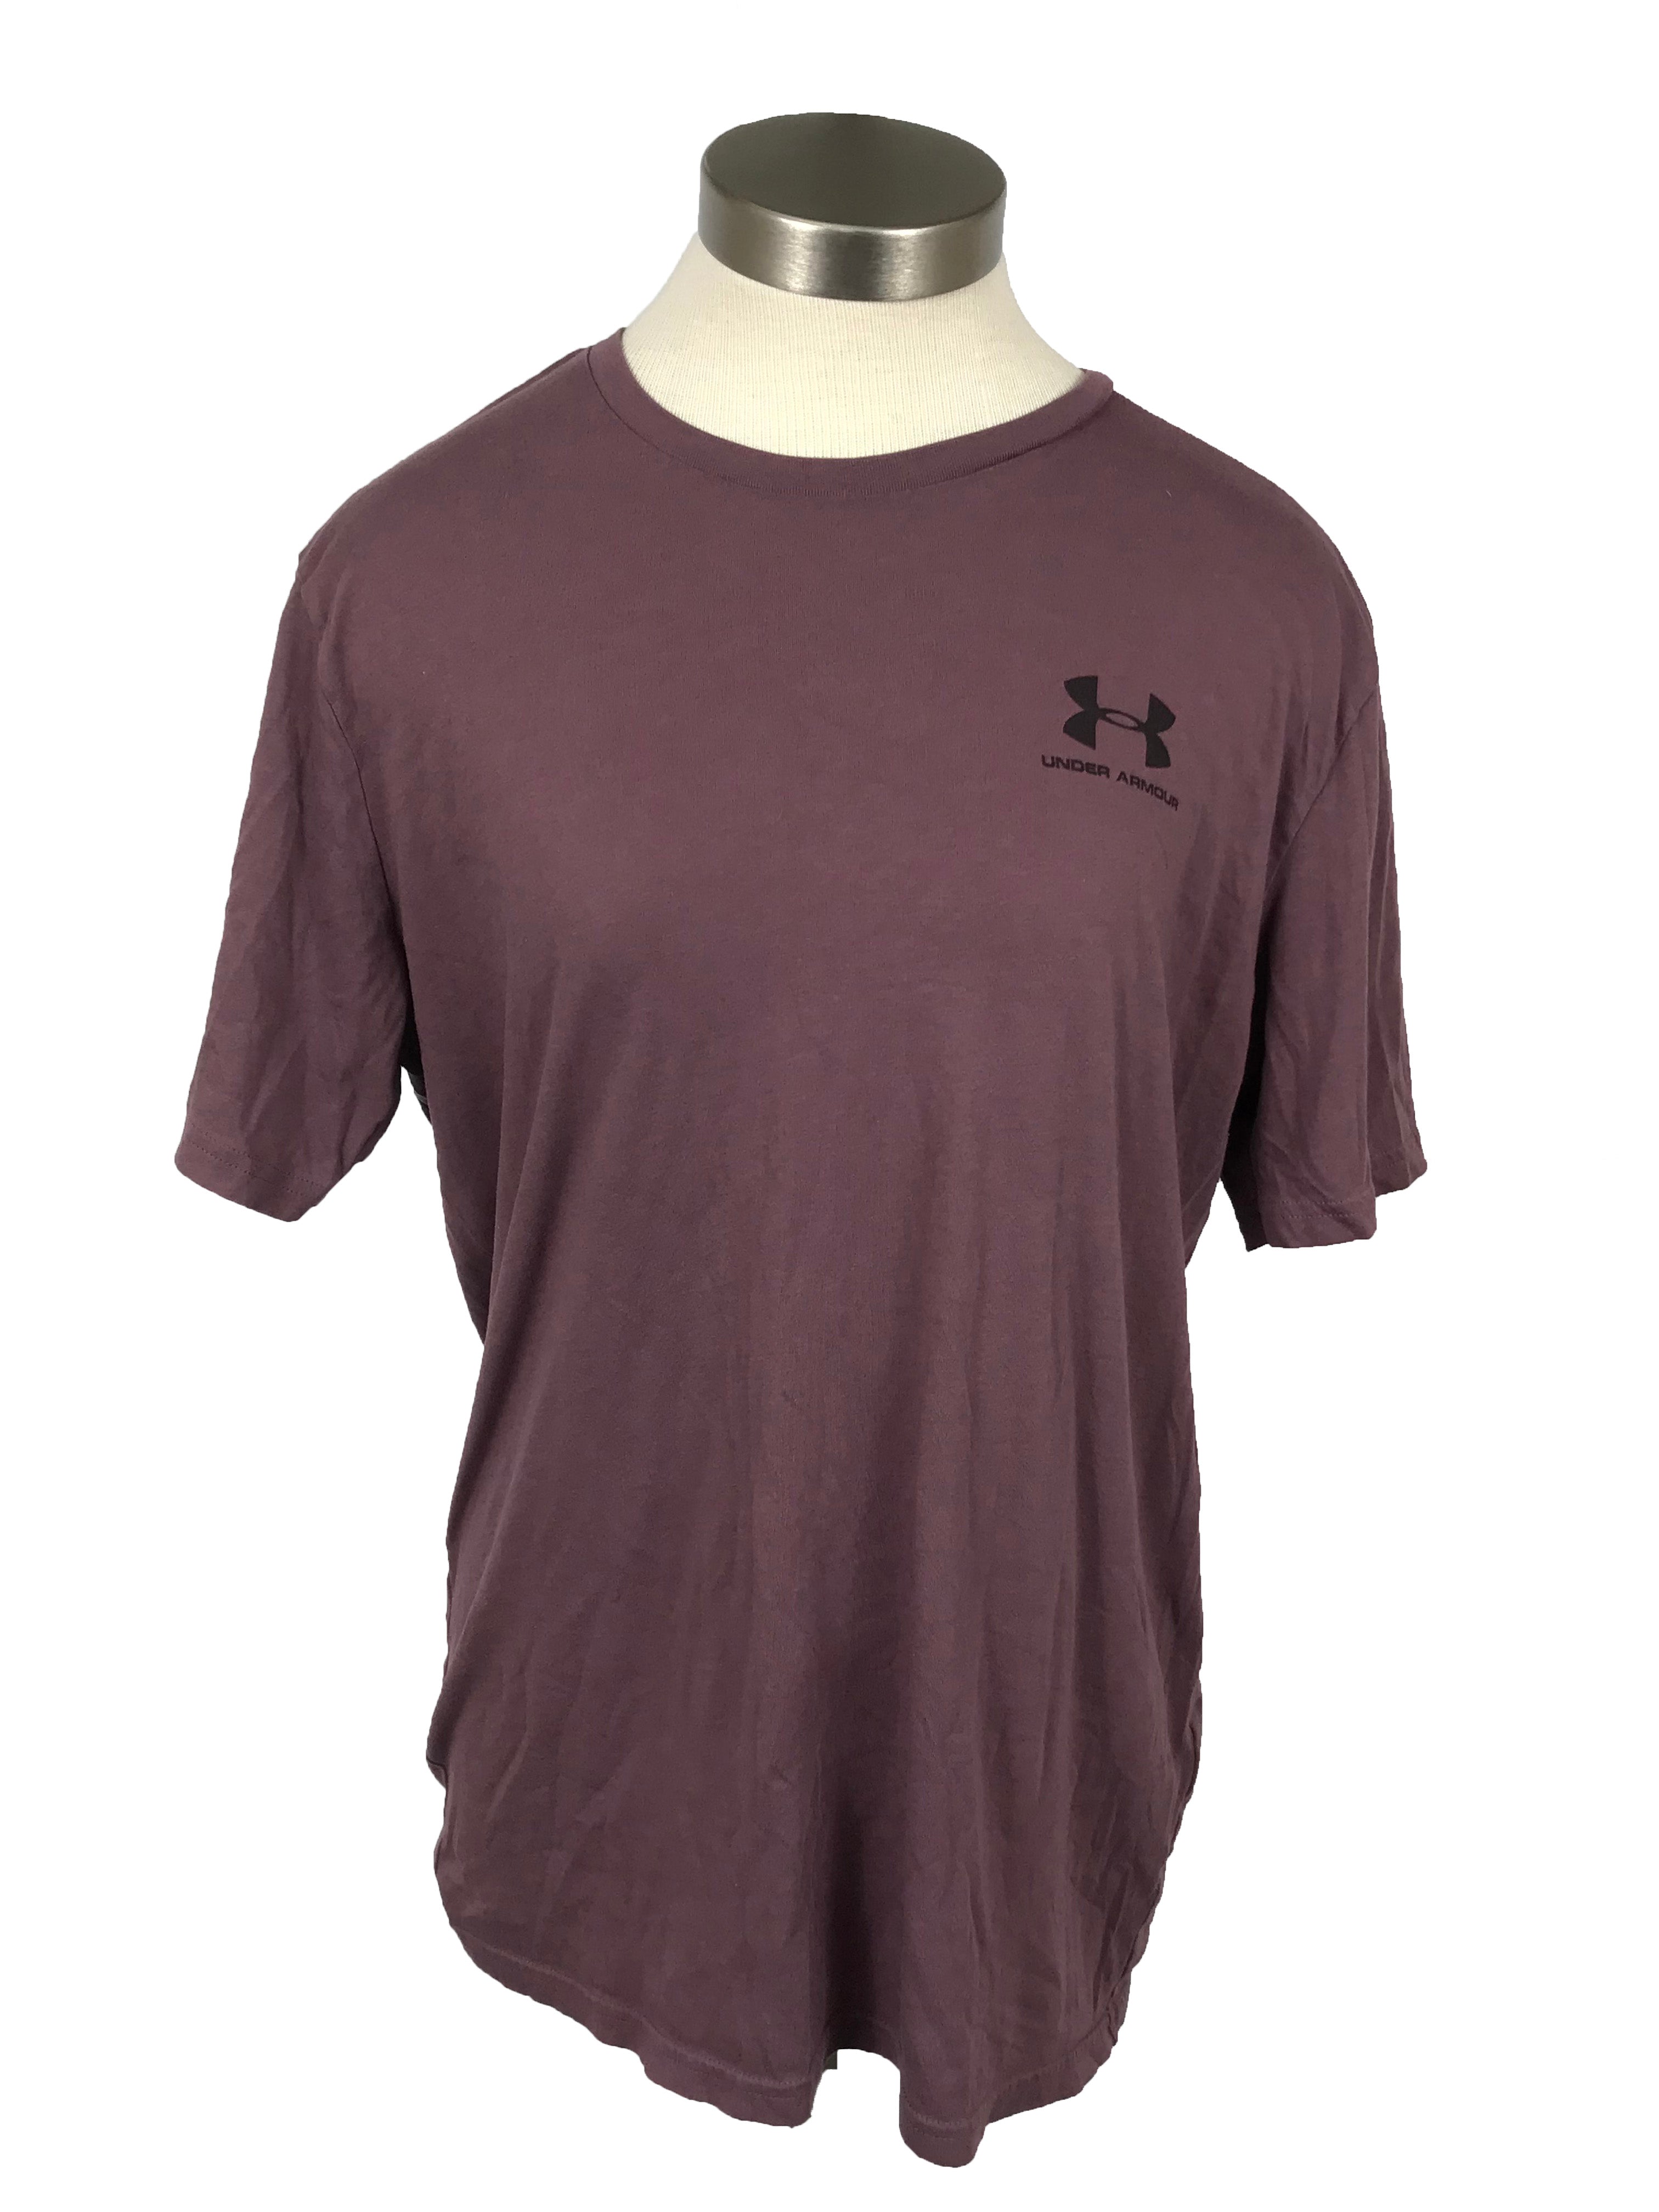 Under Armour Mauve Purple T-shirt Men's Size L